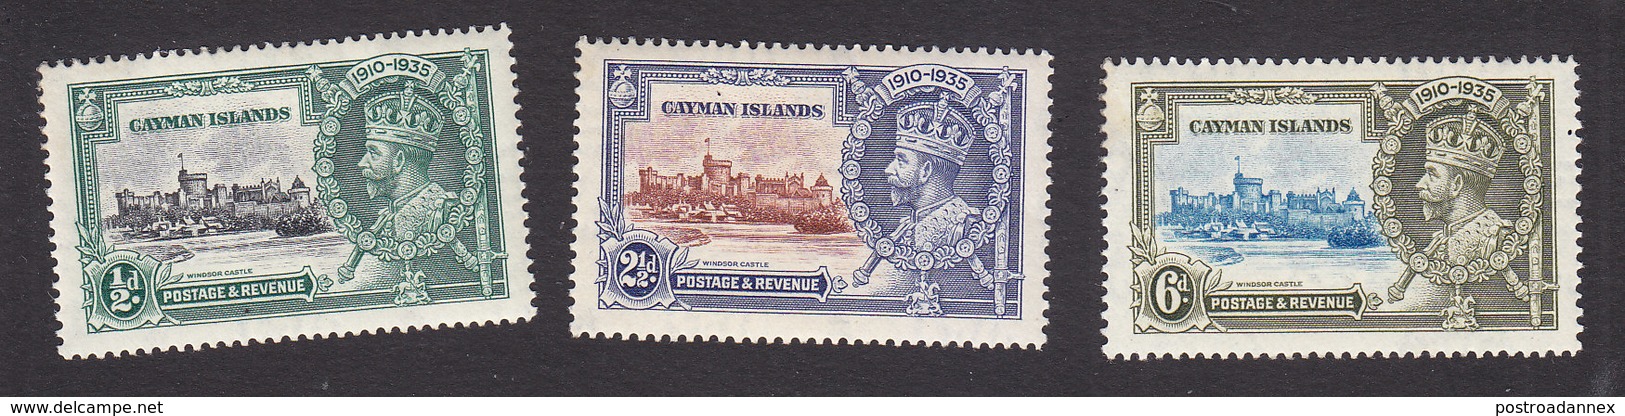 Cayman Islands, Scott #81-83, Mint Hinged, Silver Jubilee, Issued 1935 - Cayman Islands